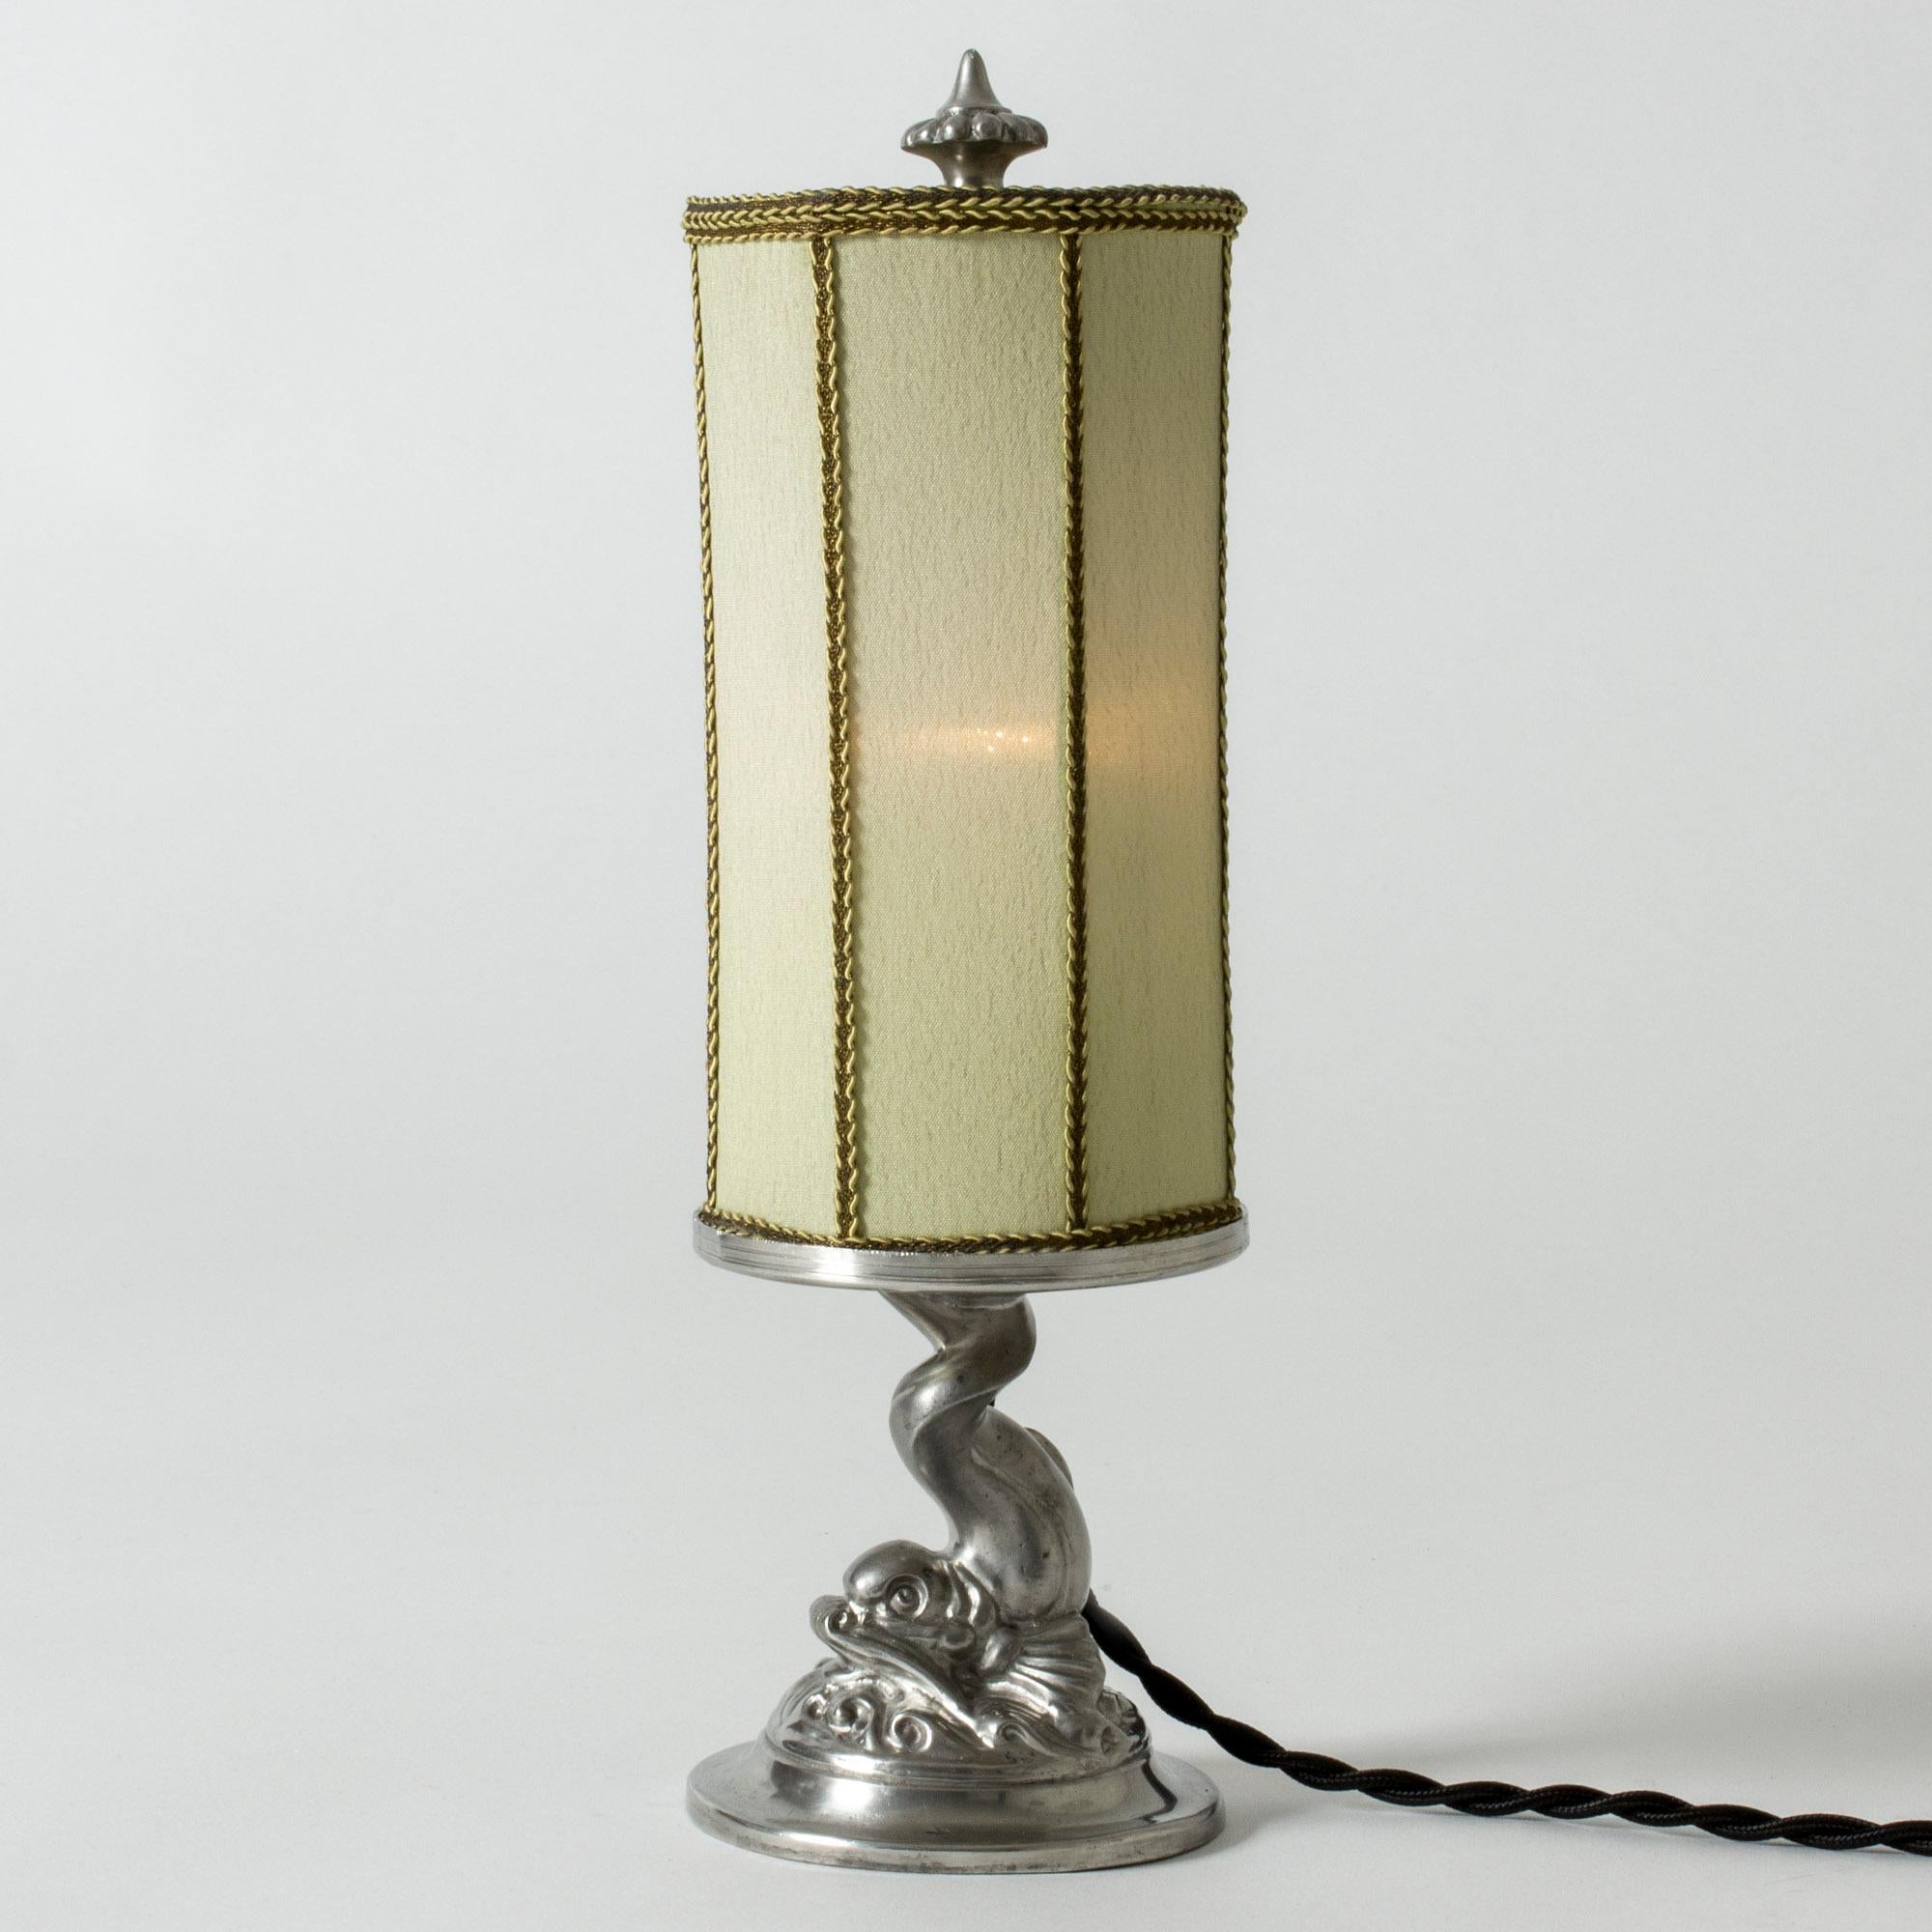 Modernistische Tischlampe aus Zinn, GAB, Schweden, 1932 (Skandinavische Moderne)